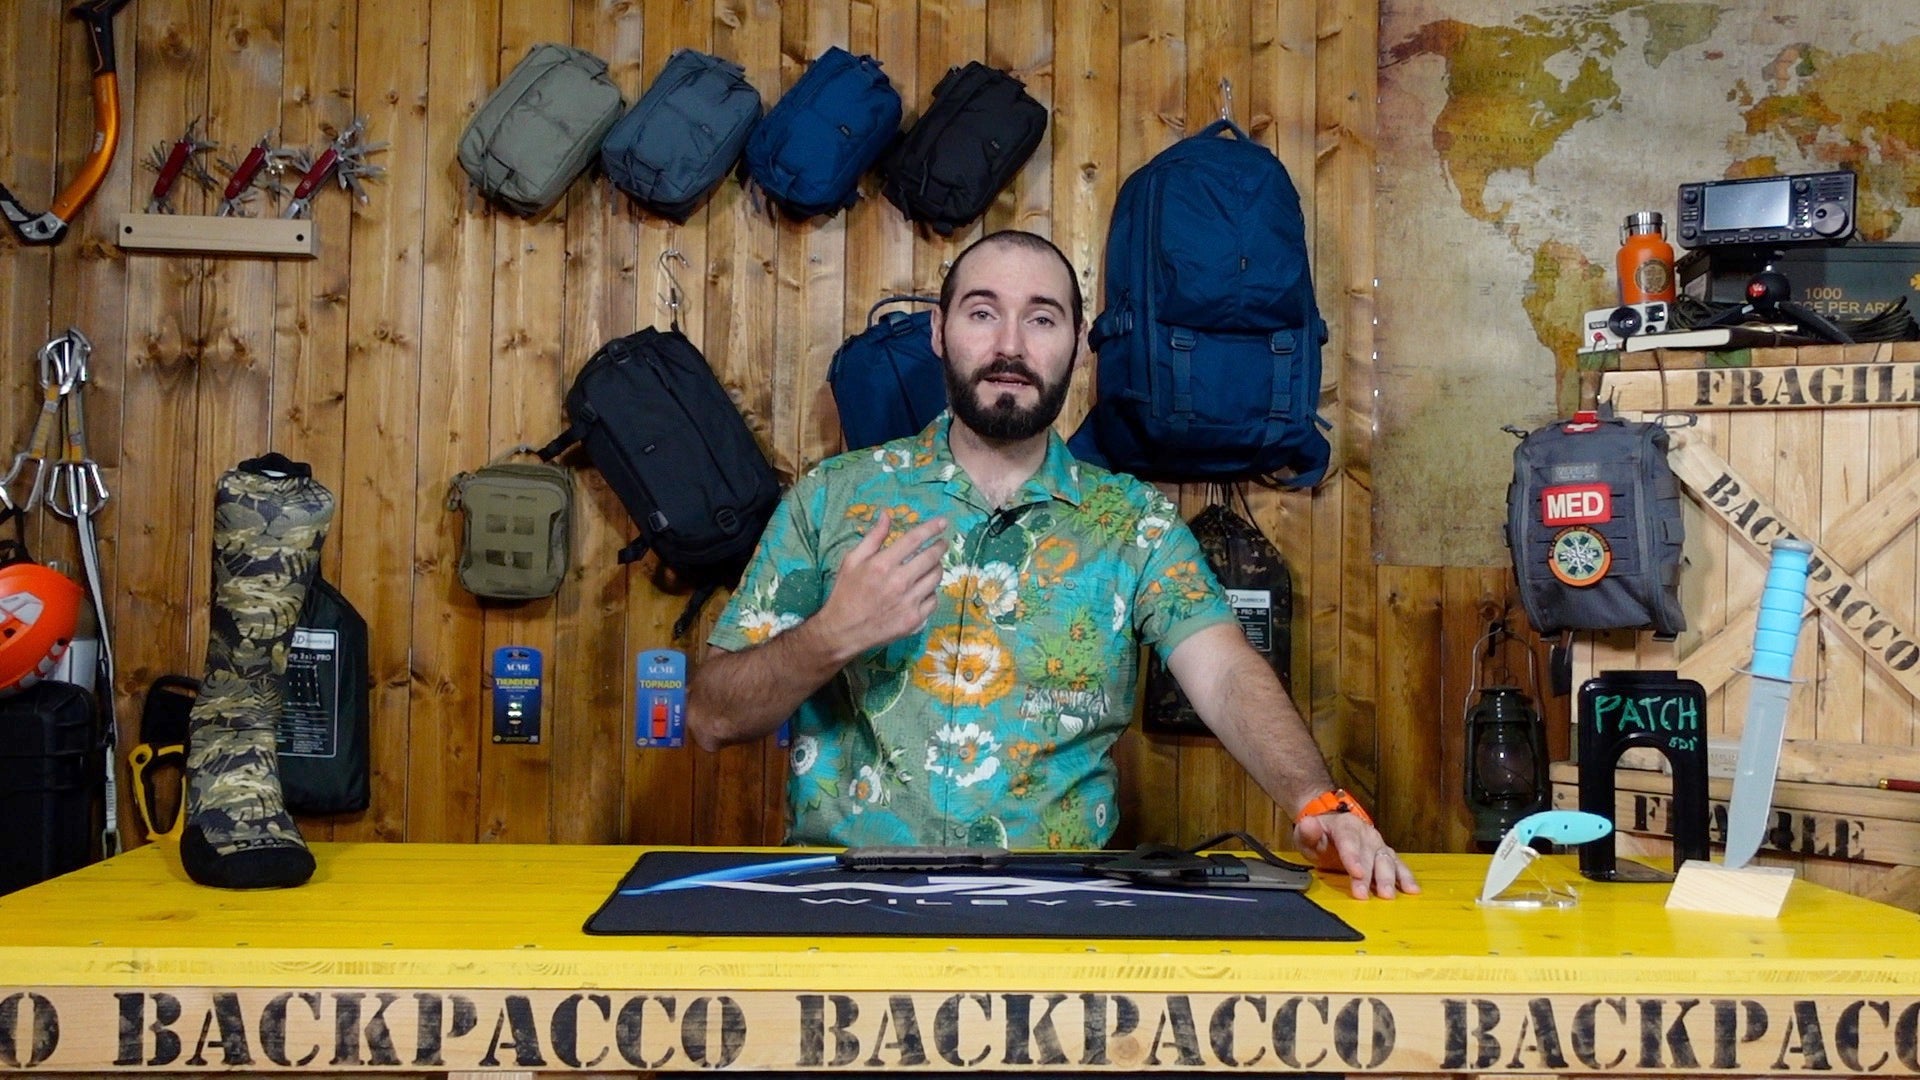 Paolo di Backpacco spiega le camicie HOG HUNTER'S di 5.11